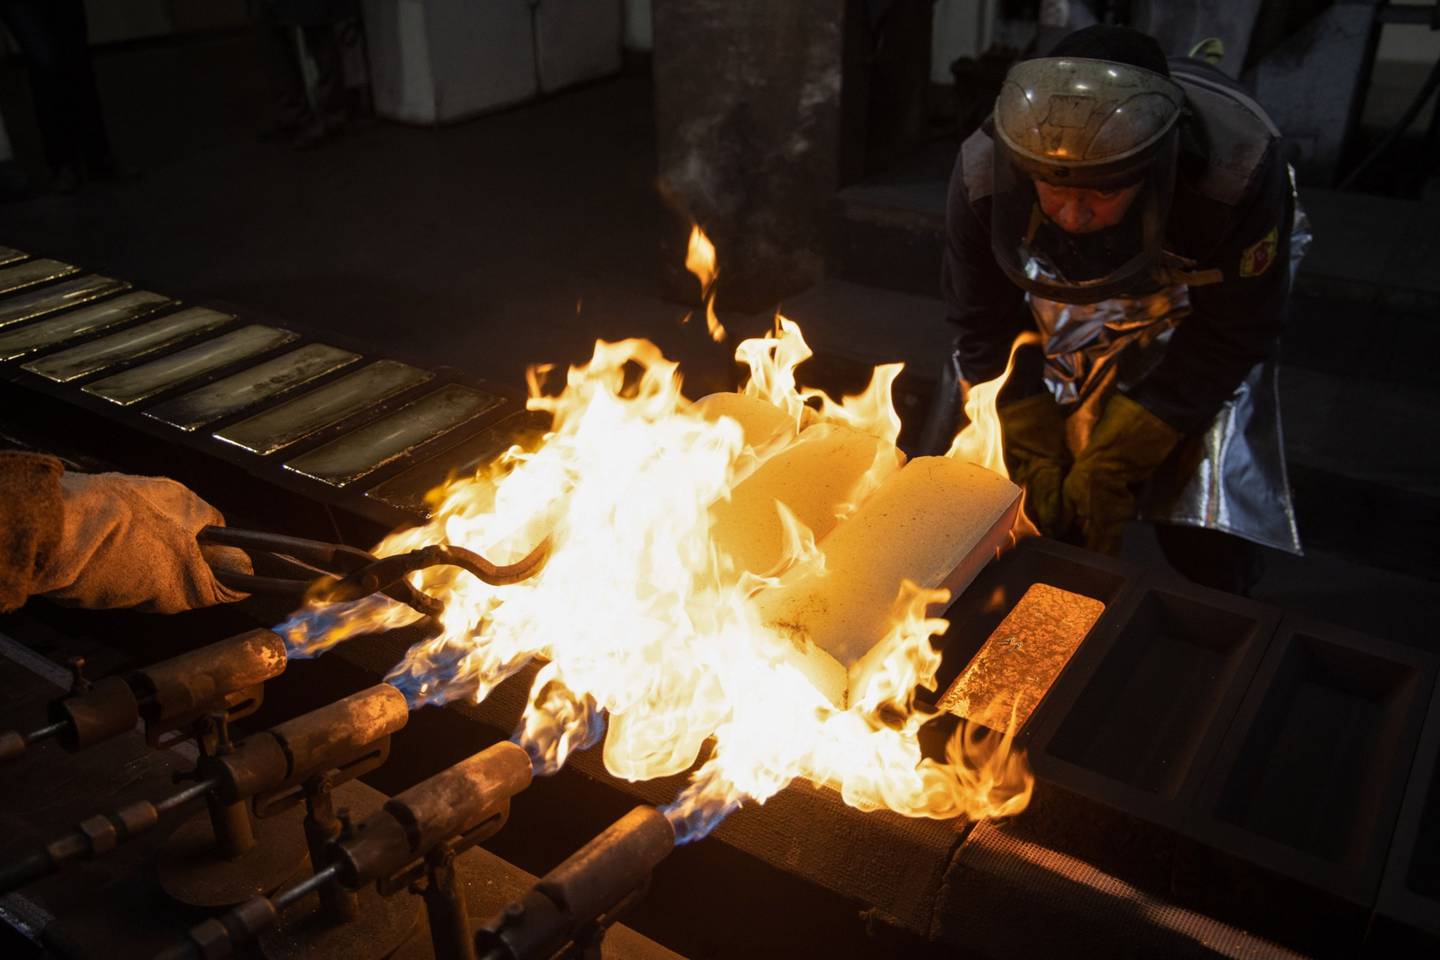 Las llamas encienden lingotes de oro recién vertidos en sus moldes en una fundición en Kasimov, Rusia